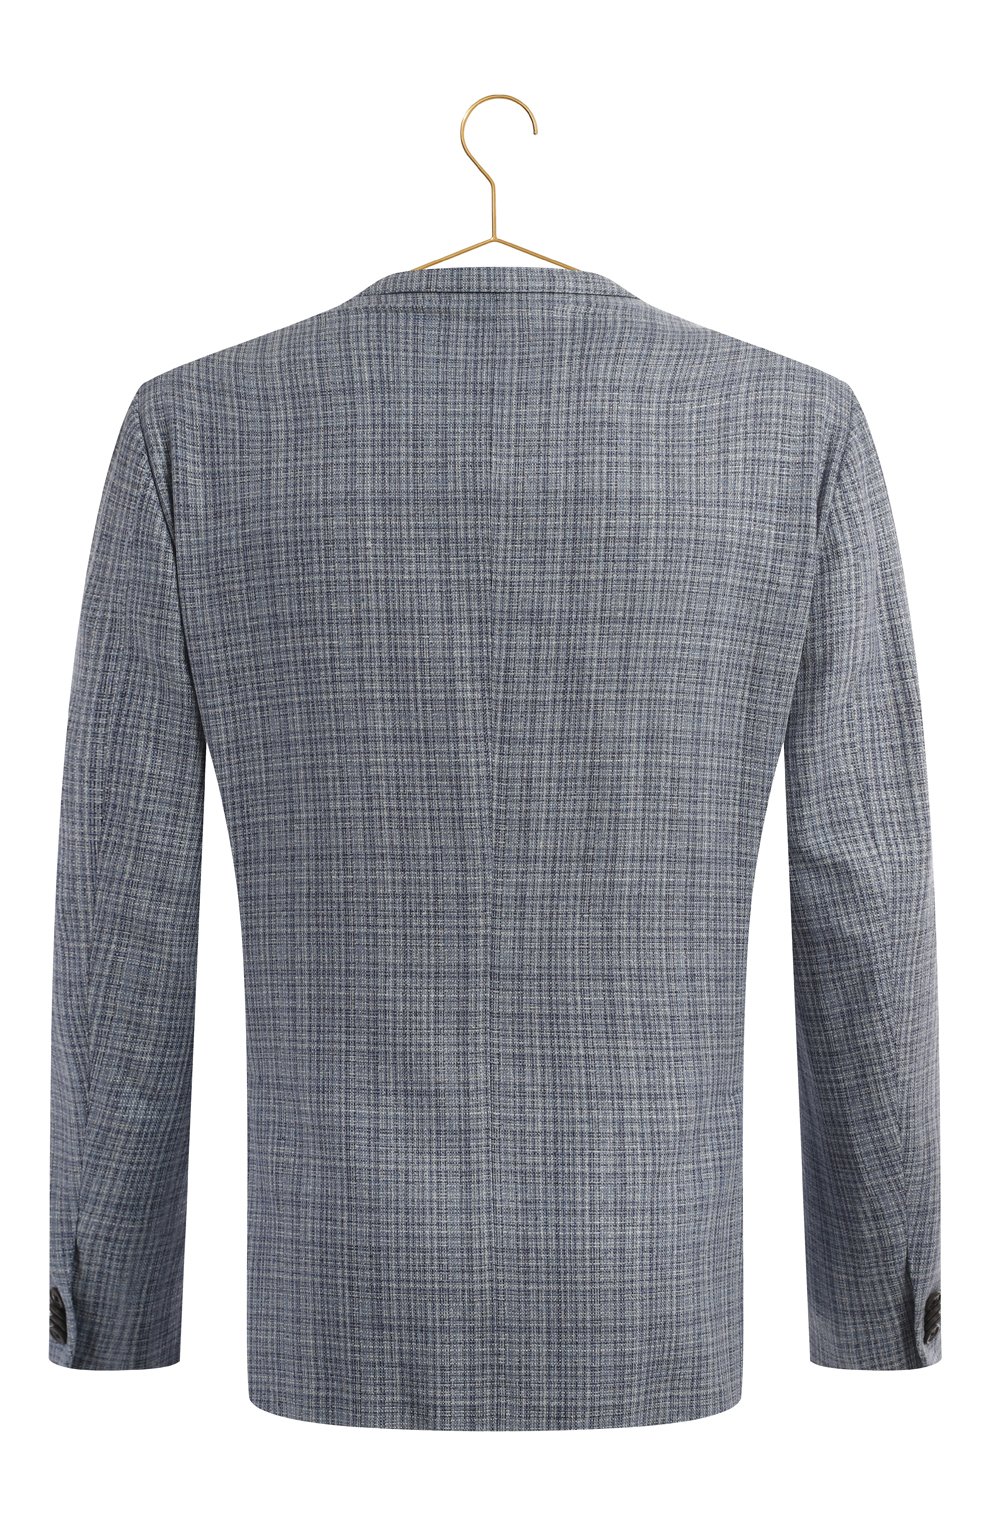 Шелковый пиджак | Corneliani | Голубой - 2